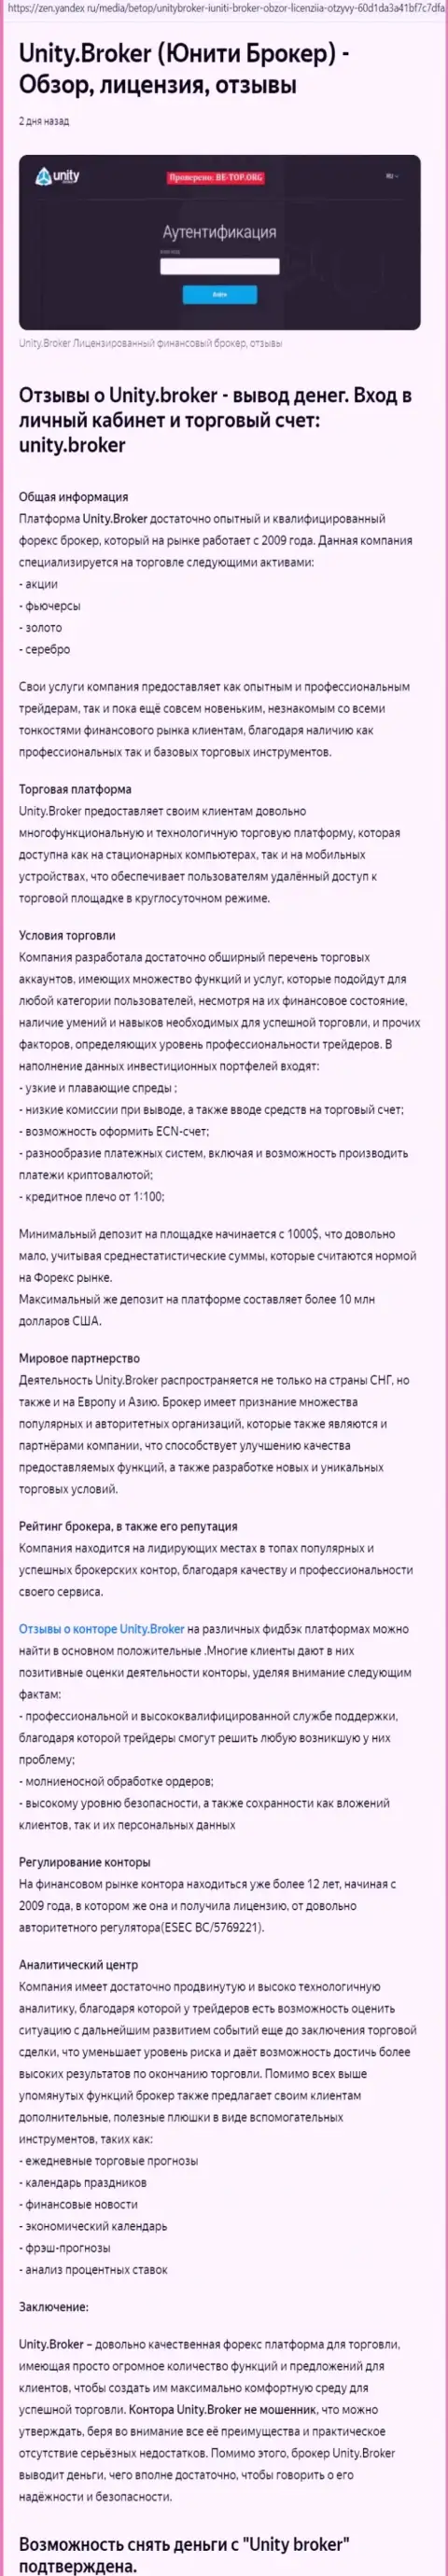 Обзор деятельности ФОРЕКС организации Юнити Брокер на web-сервисе Яндекс Дзен